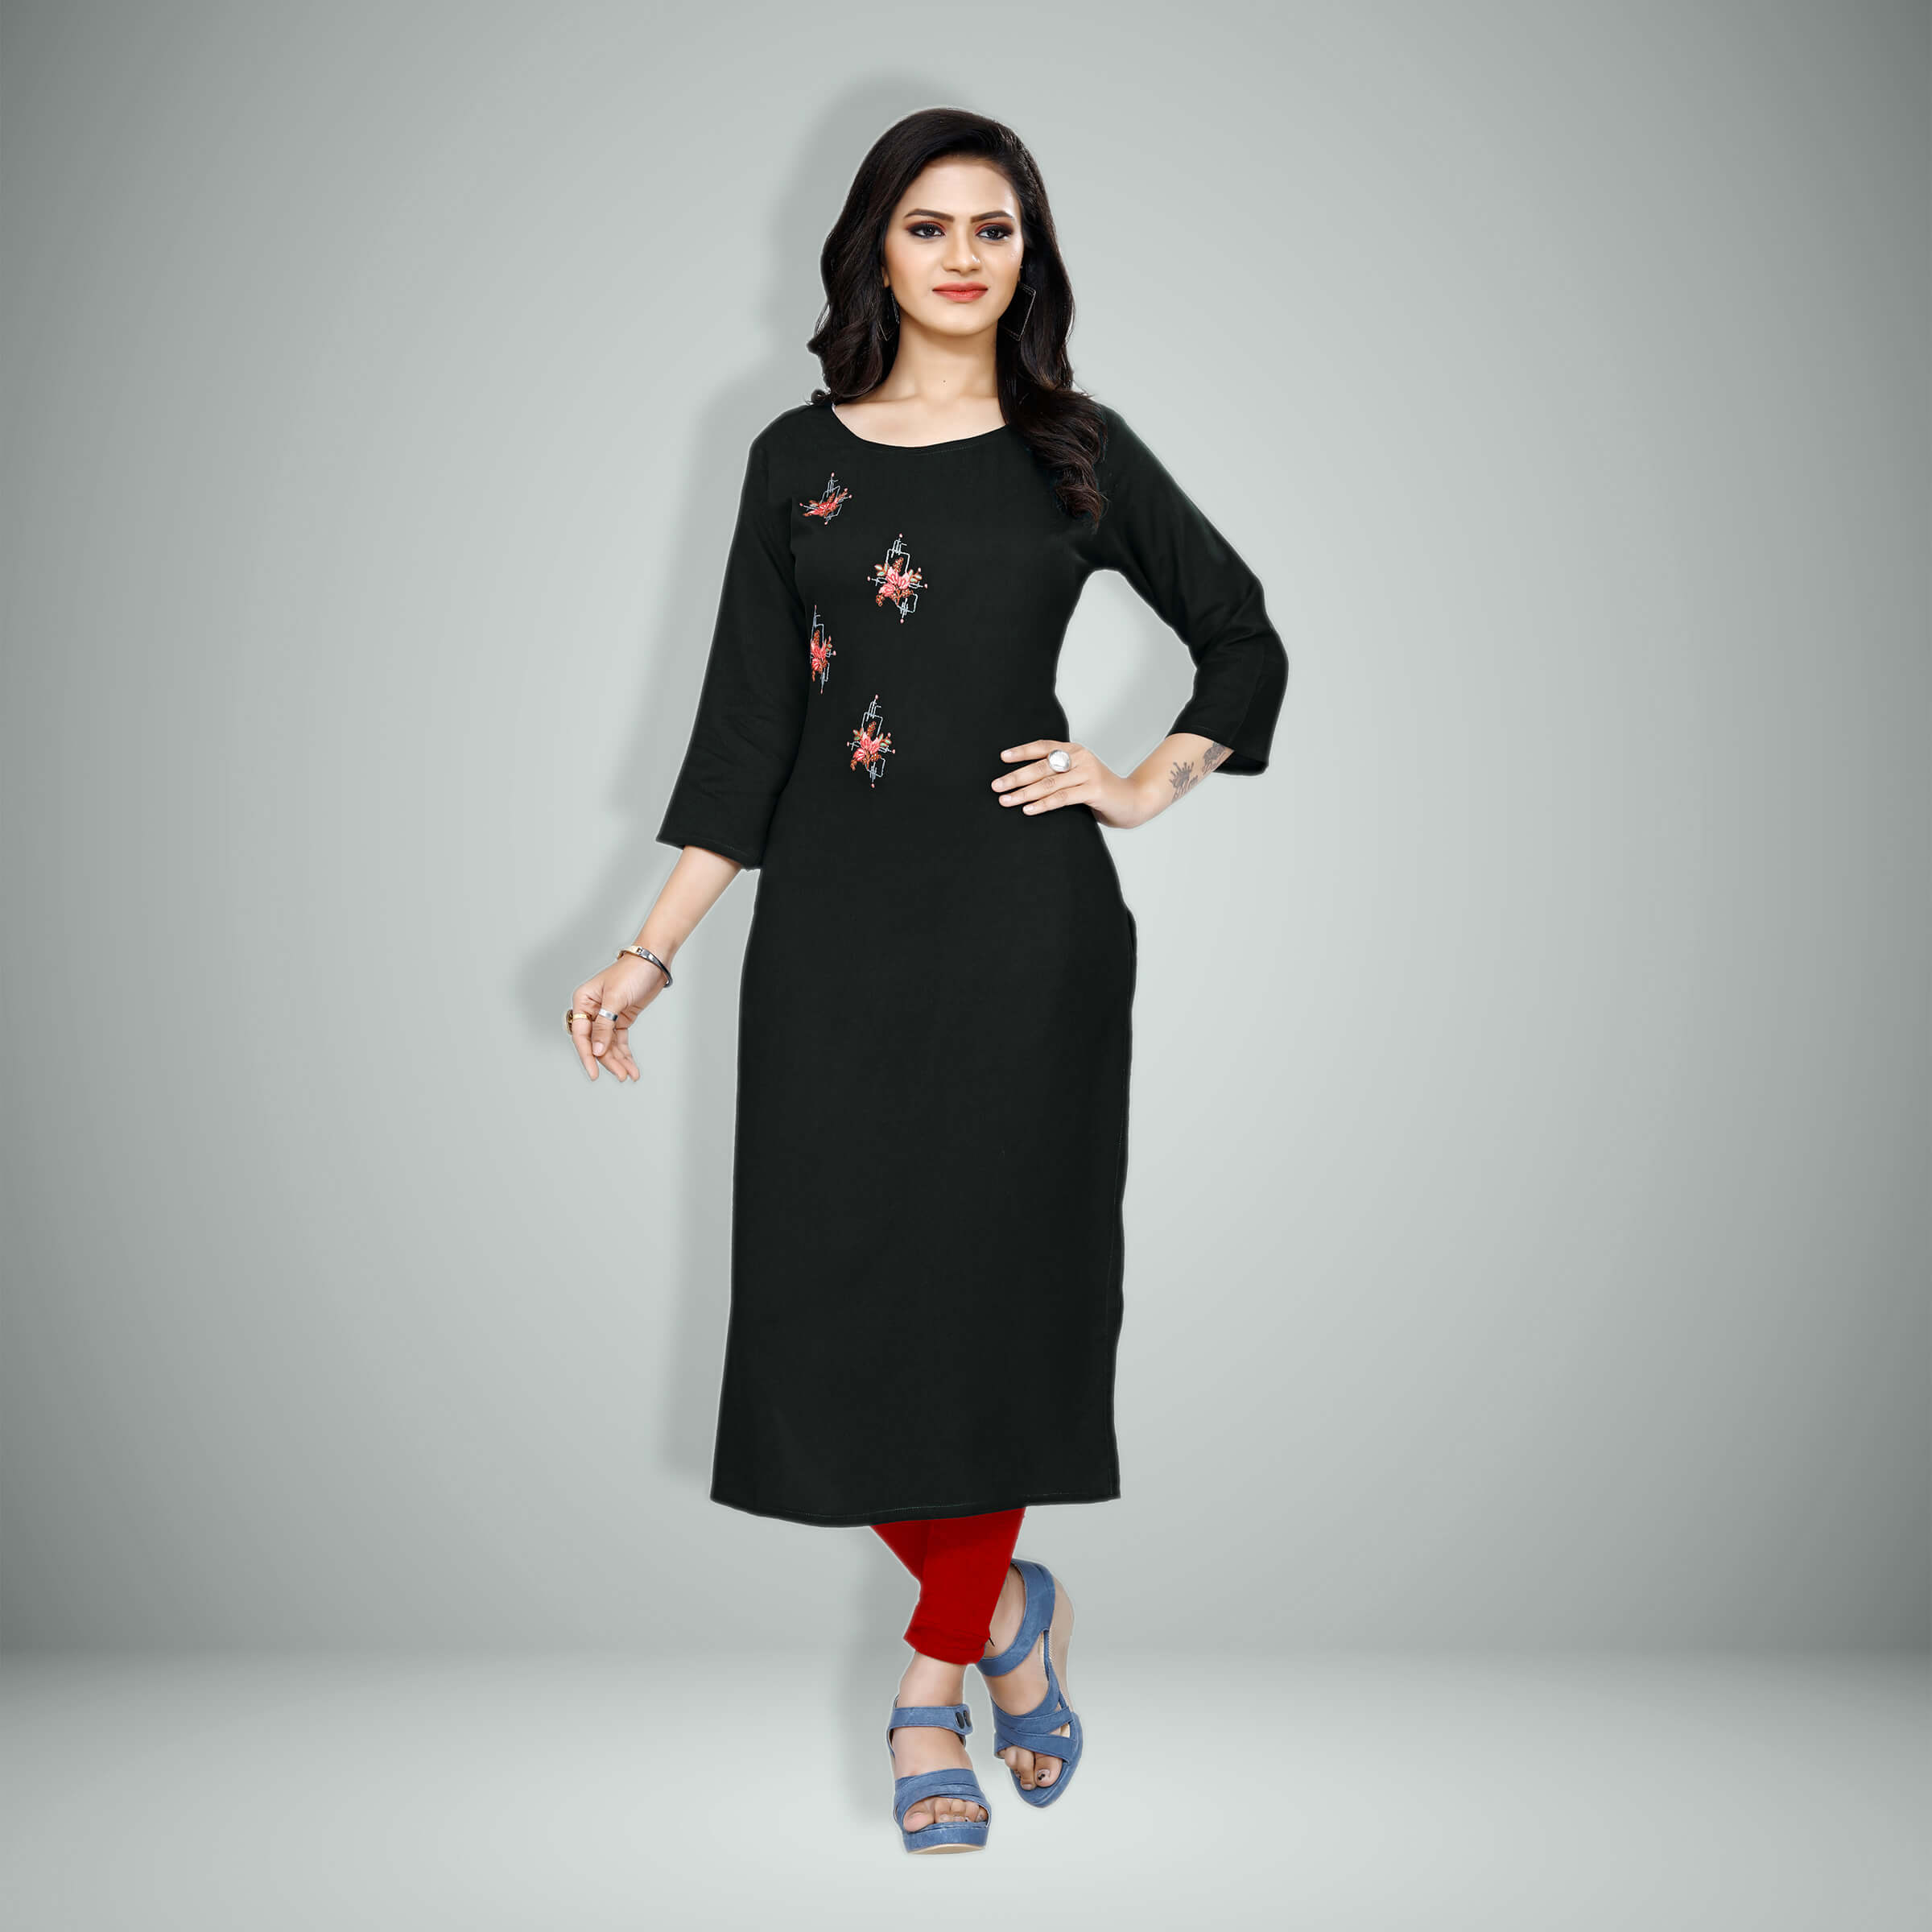 Girlish Kurti Design For Plus Size Women - The Latest, Fancy & Unique